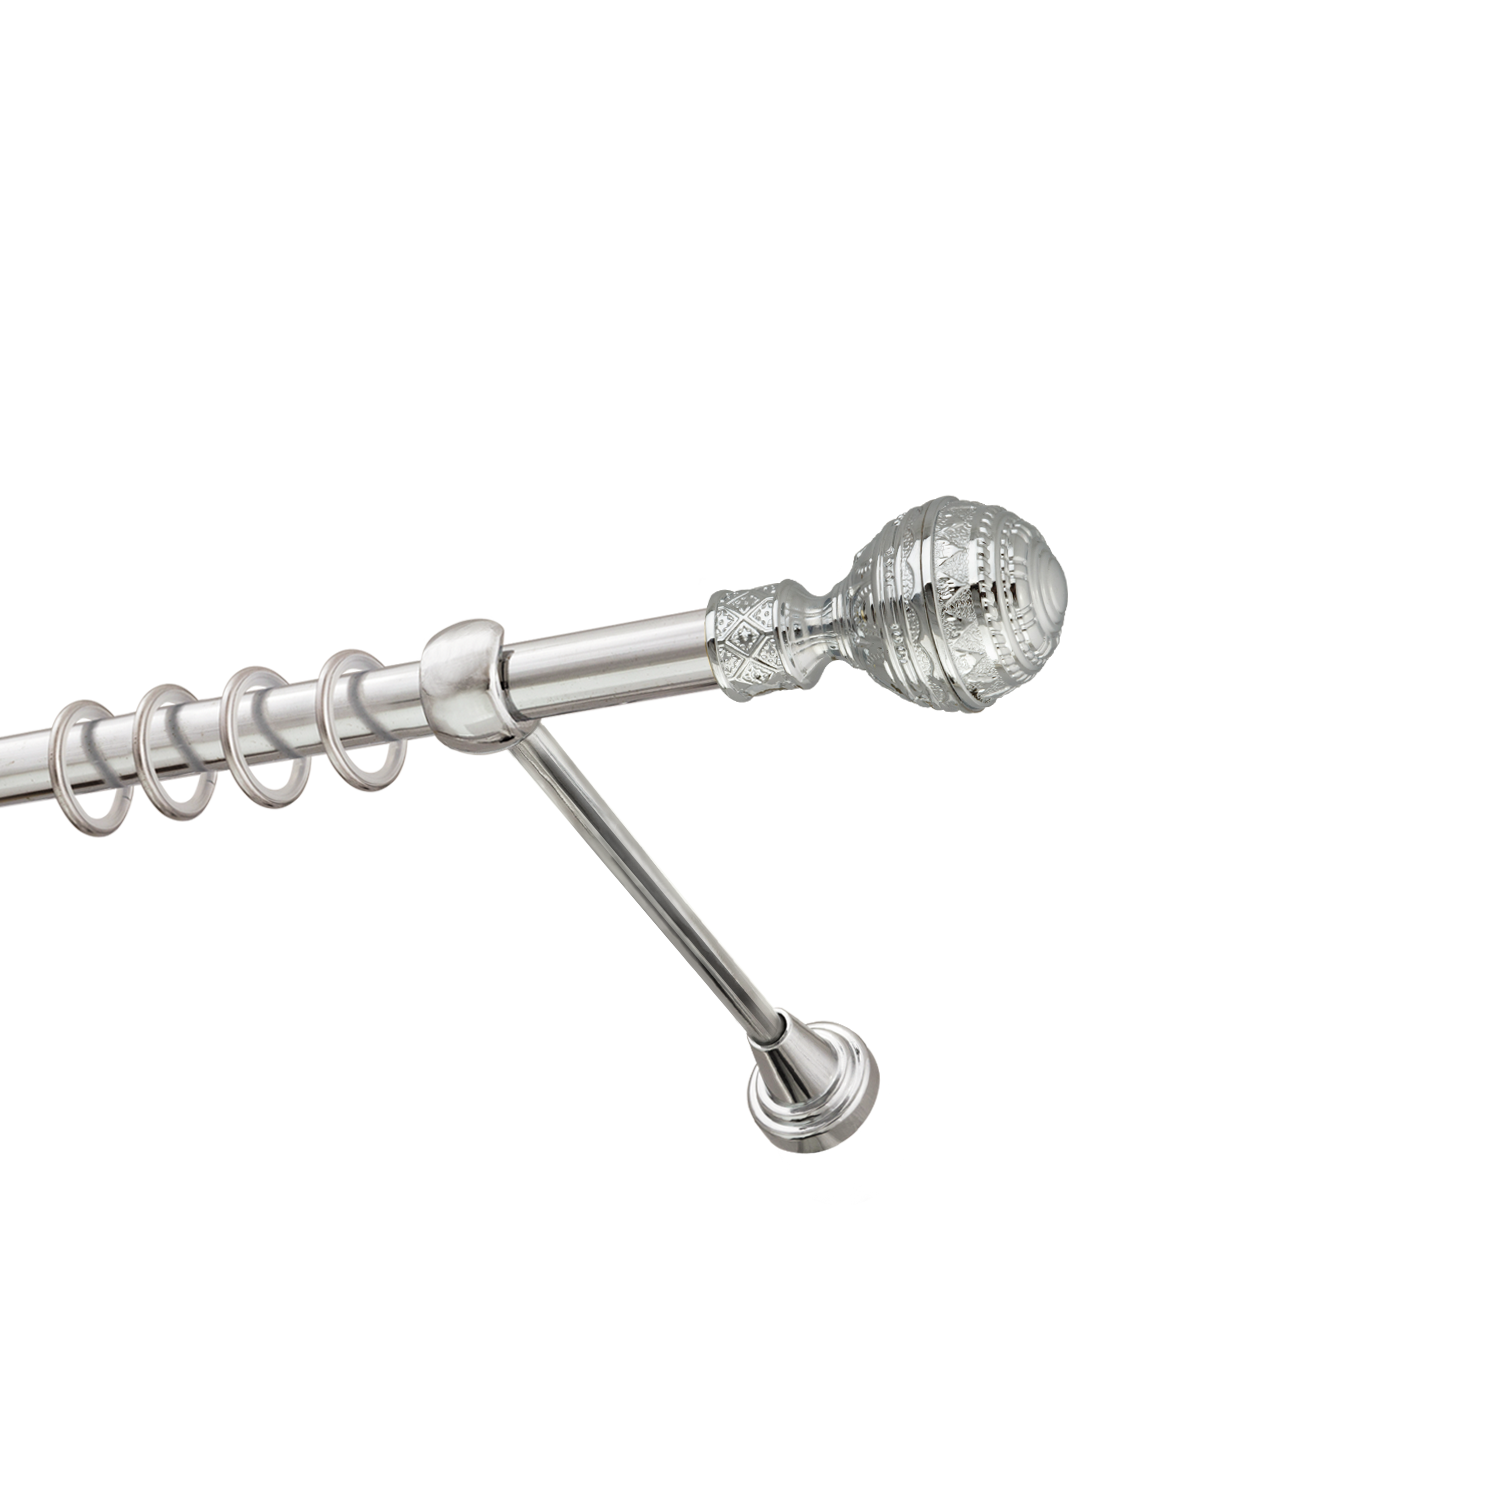 Металлический карниз для штор Роял, однорядный 16 мм, серебро, гладкая штанга, длина 140 см - фото Wikidecor.ru